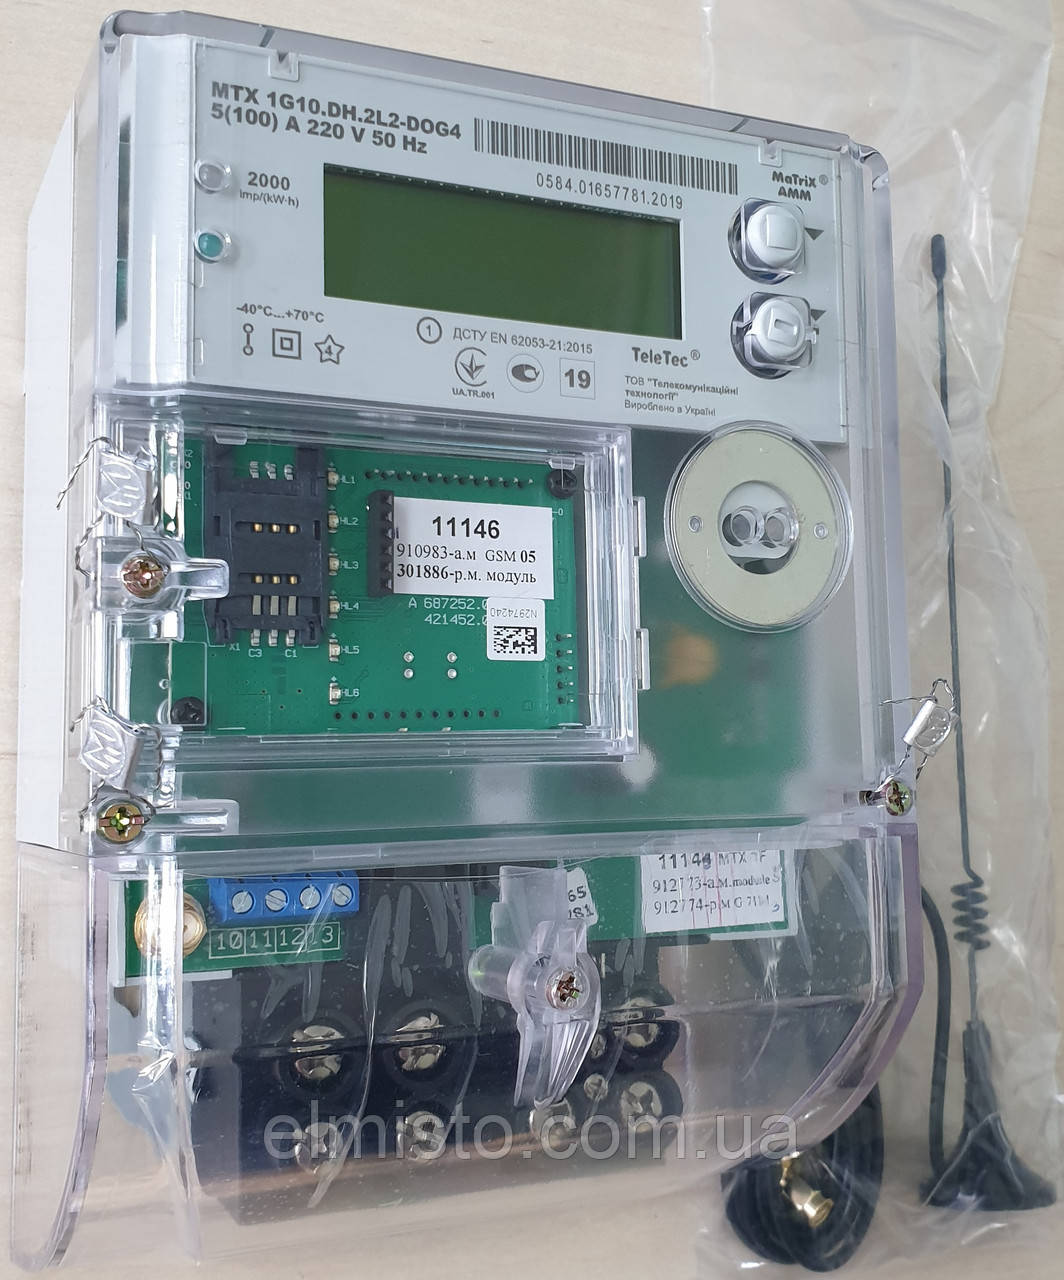 Электросчетчик MTX1G10.DH.2L2-DOG4 A± ("зеленый тариф") 5-100А, 220В многотарифный, GSM модуль, ПЗР